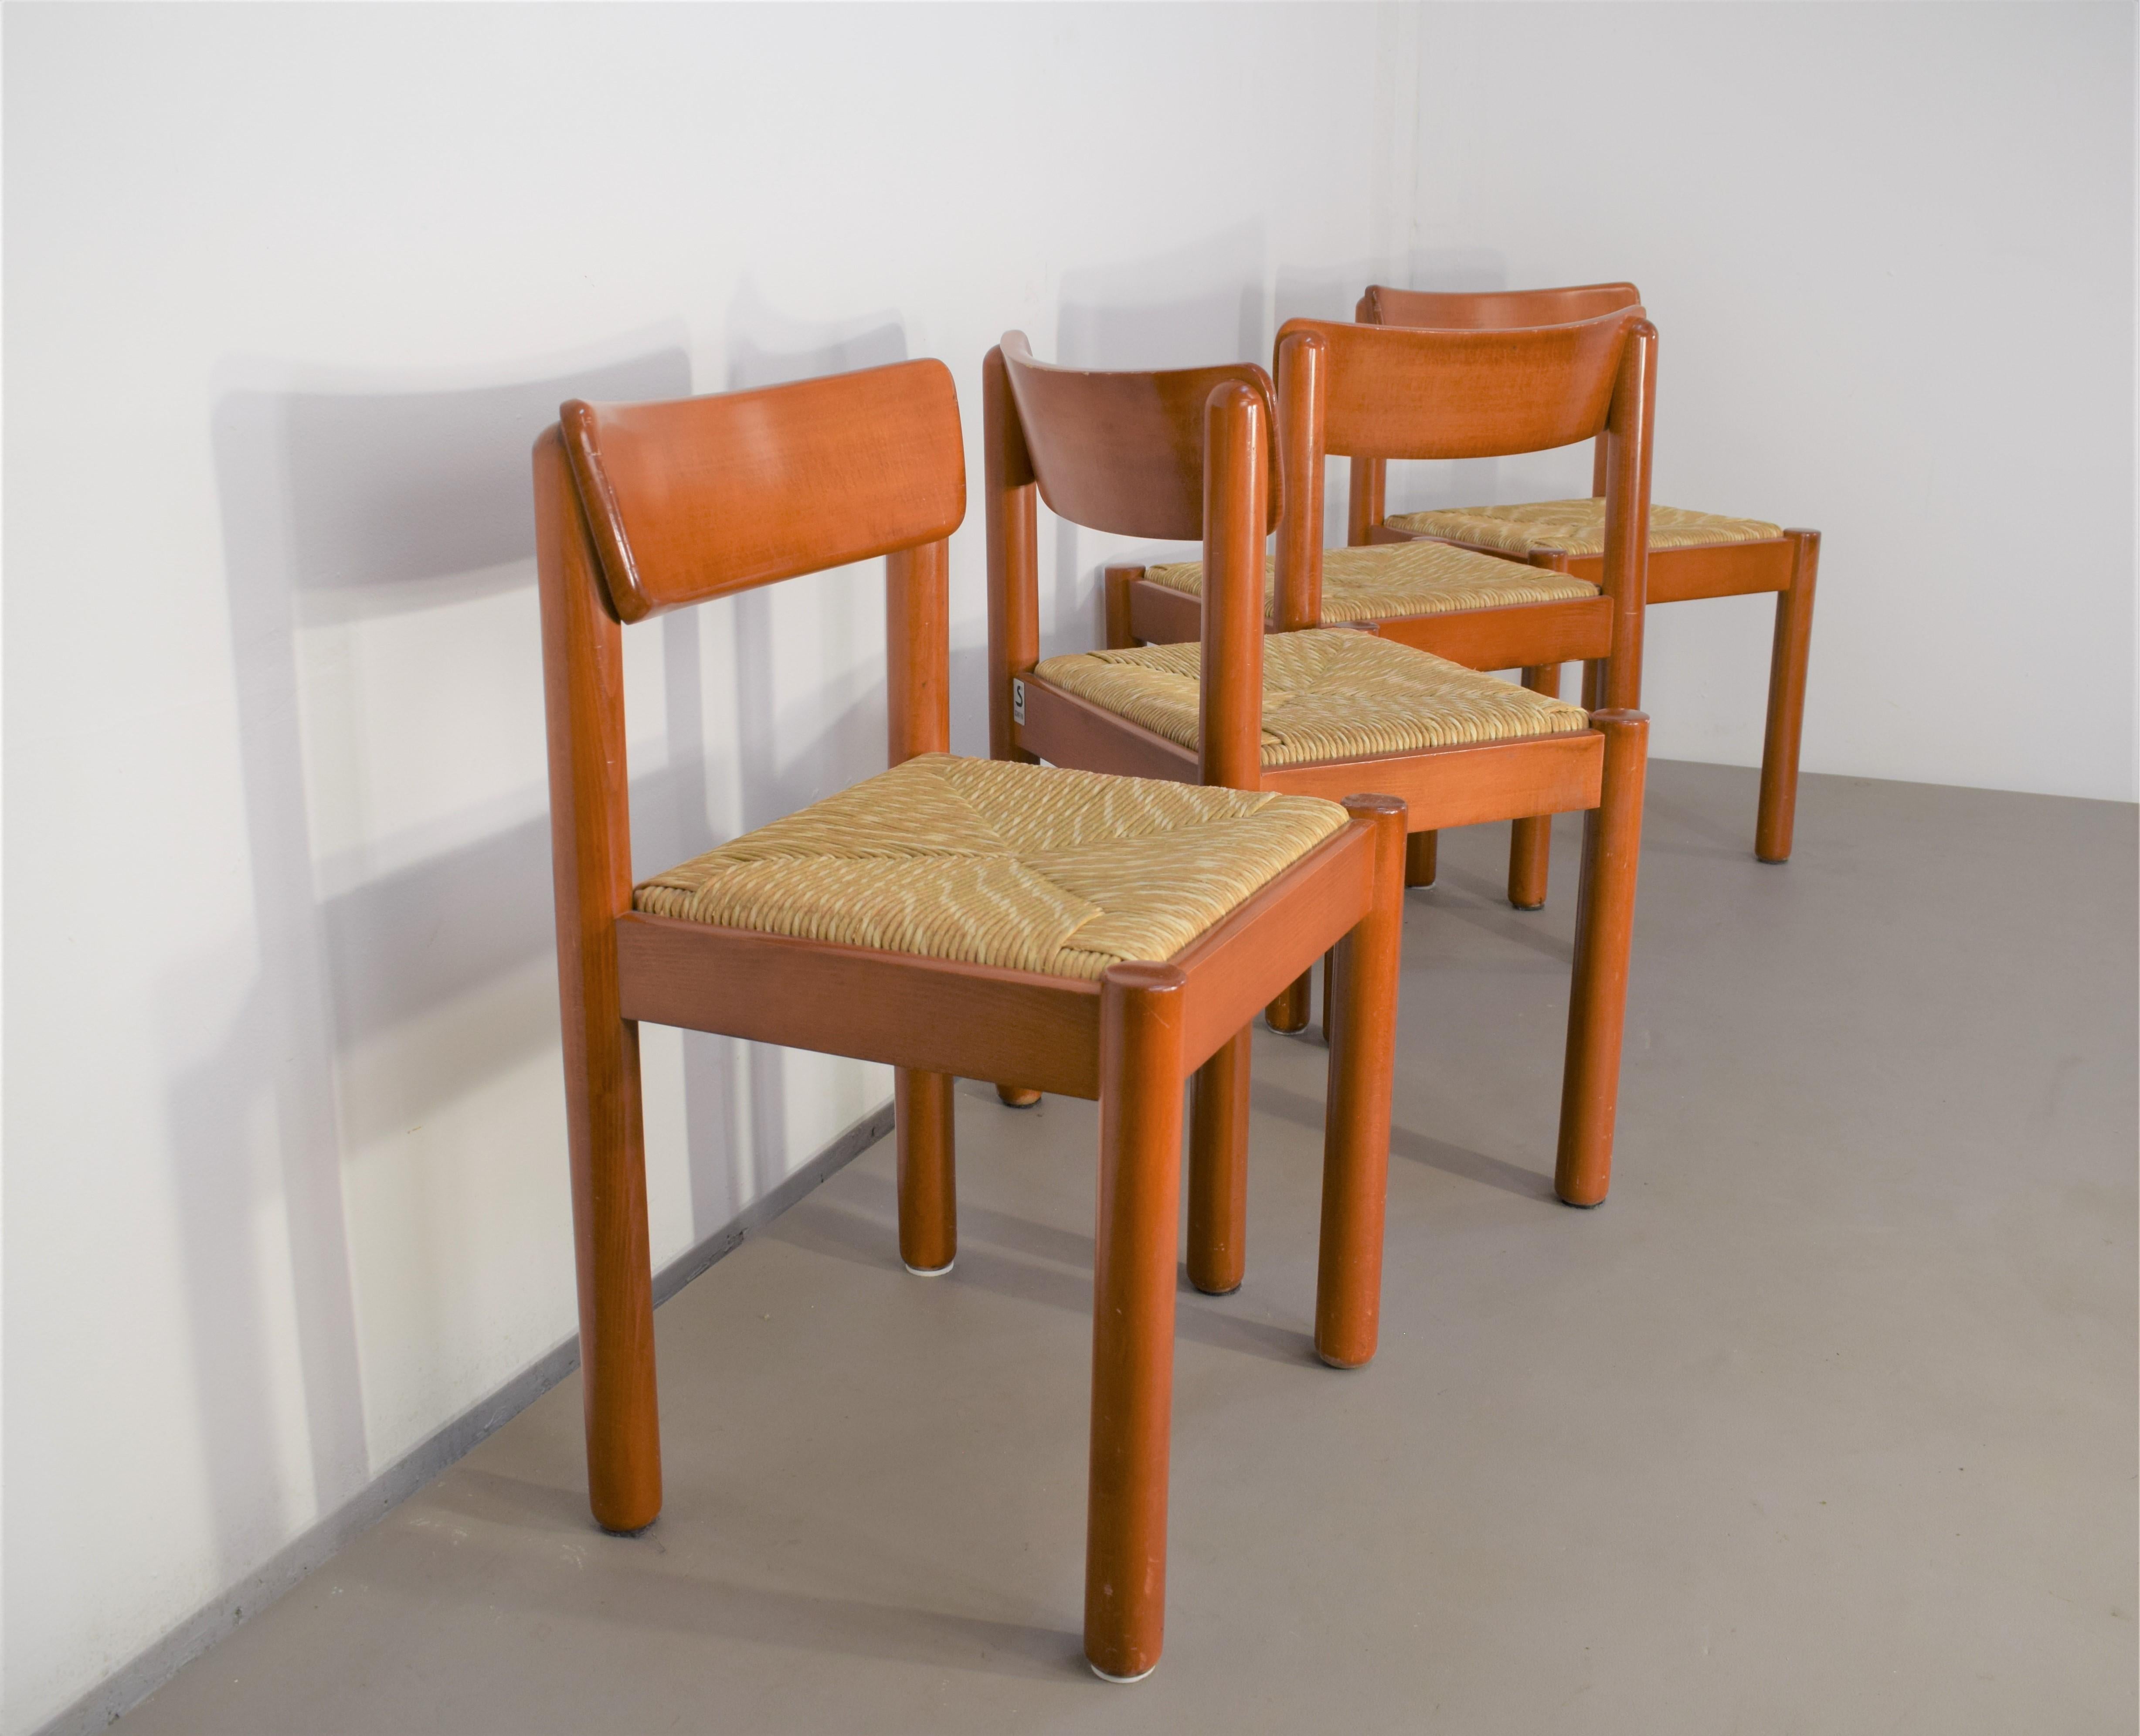 Satz von 4 Stühlen von Vico Magistretti für Schiffini, 1960er Jahre.
Abmessungen: H= 76 cm; B= 49 cm; T= 46 cm; H Sitz= 45 cm.